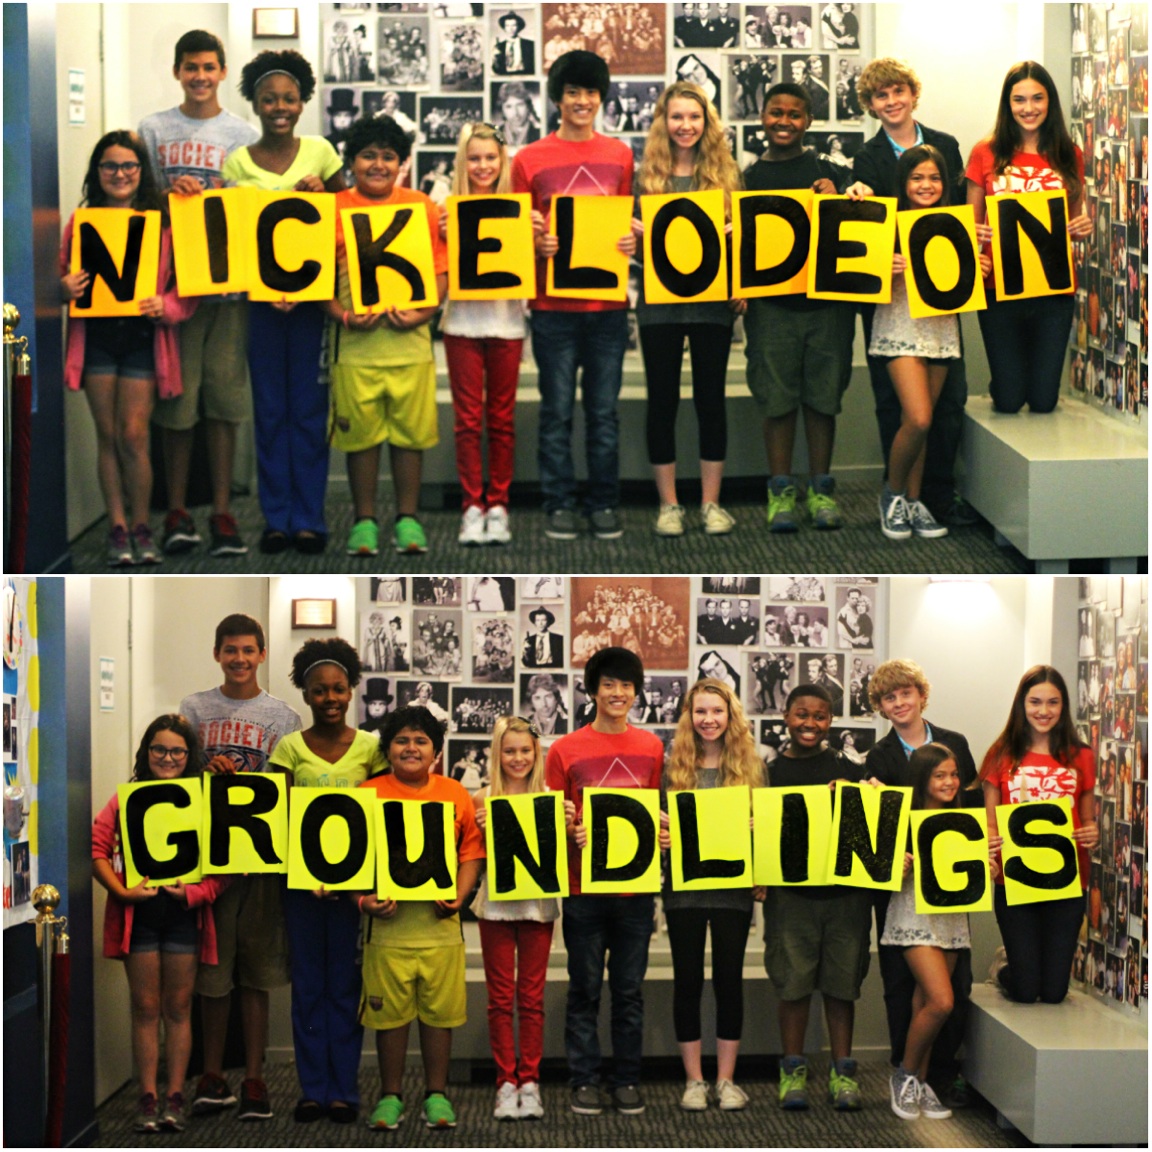 Nickelodeon Groundlings 2014